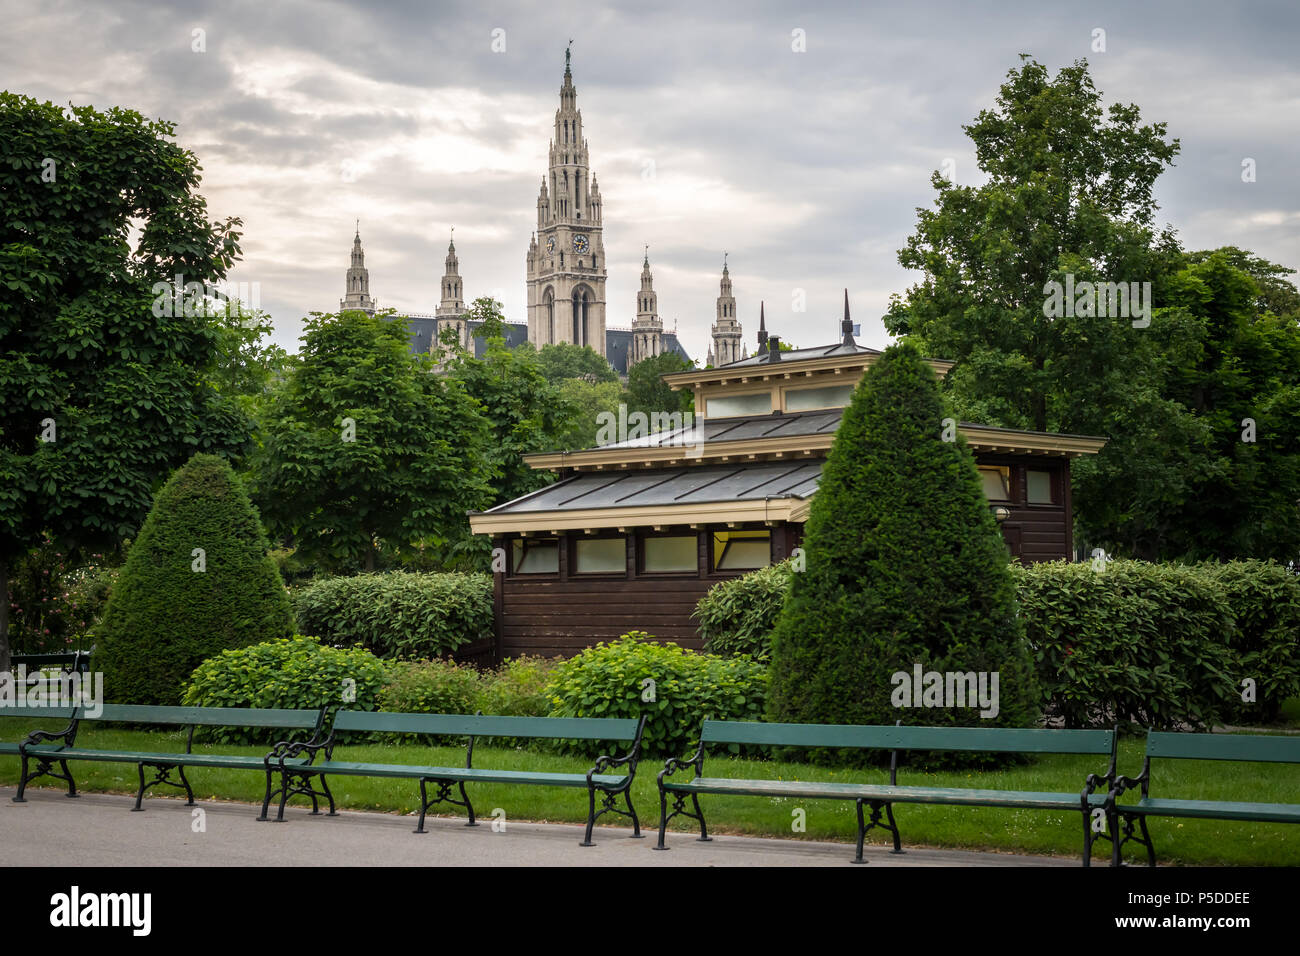 Bänke, öffentliche Toilette, Bäume und Hecken im Volksgarten in Wien  (Österreich) mit Rathaus in Backgounrd Stockfotografie - Alamy